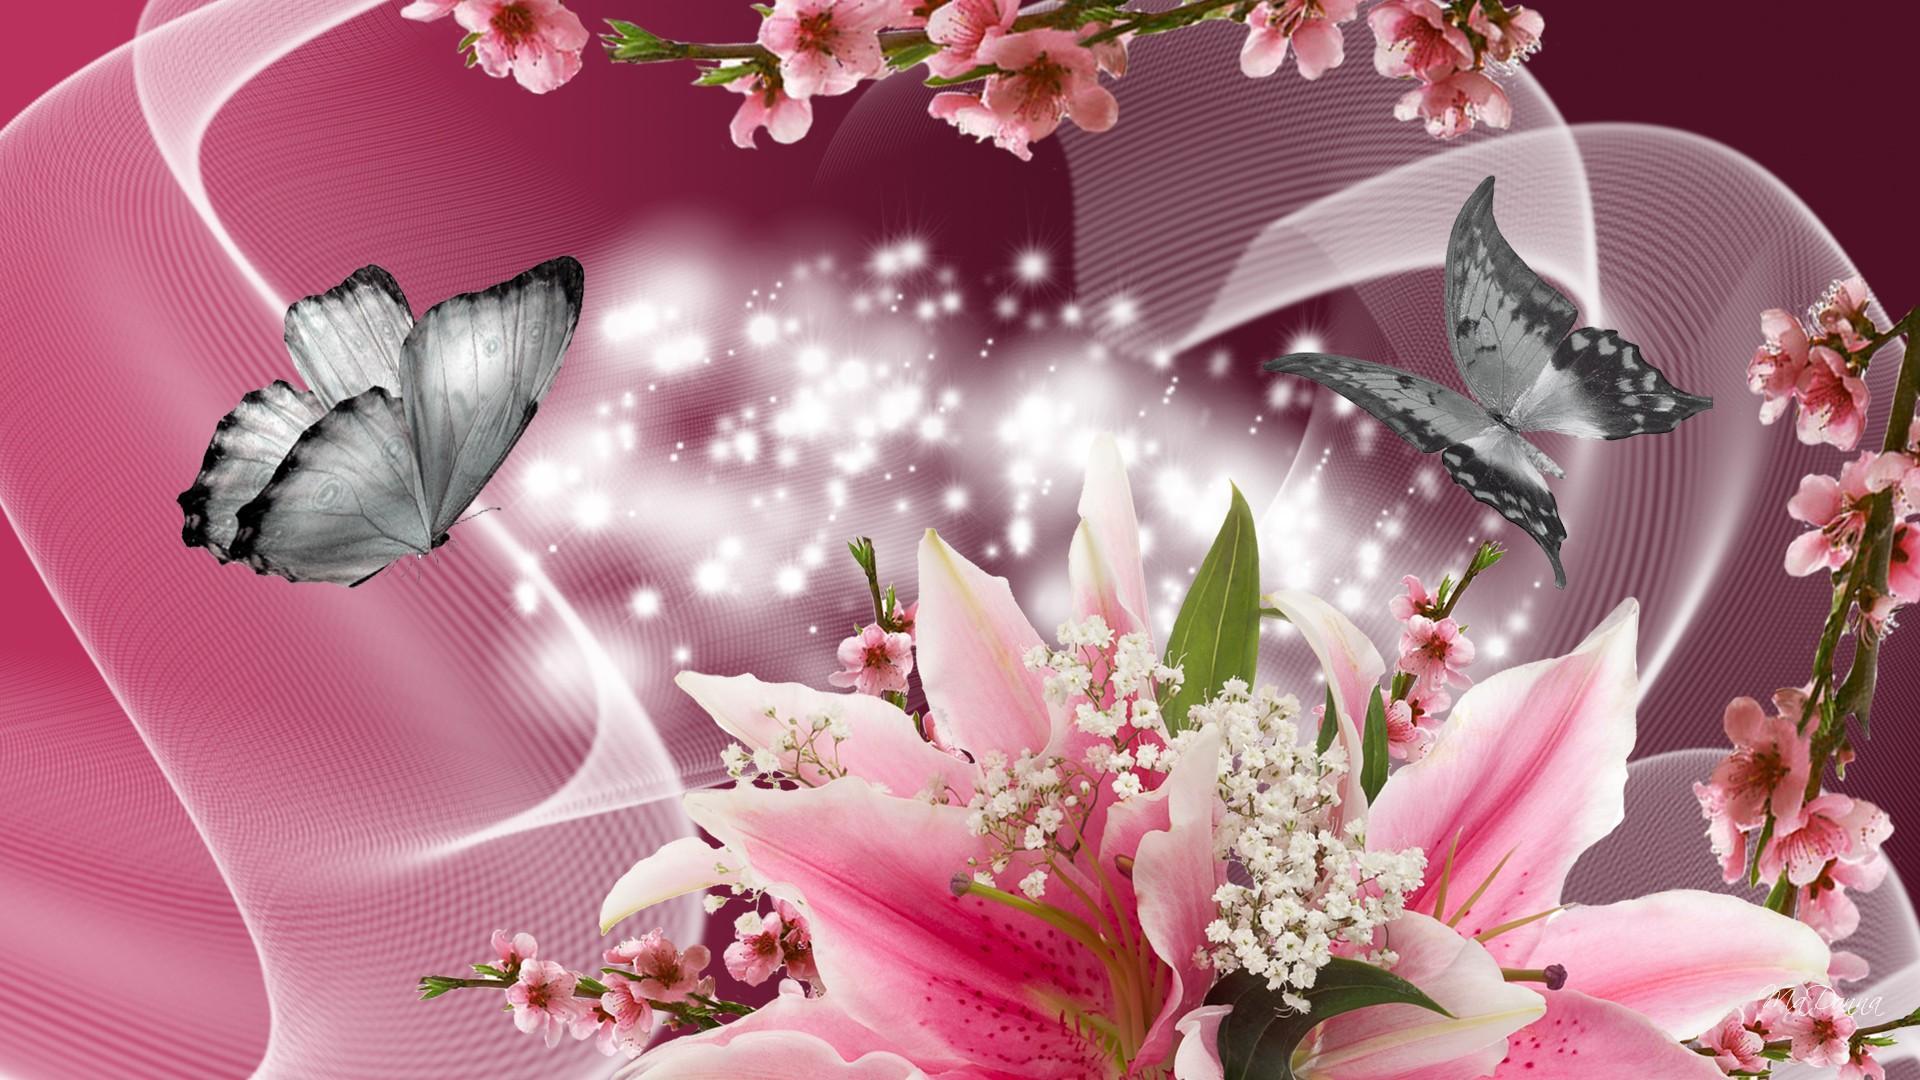 Lilies Apple Blossoms HD Desktop Wallpaper Widescreen High